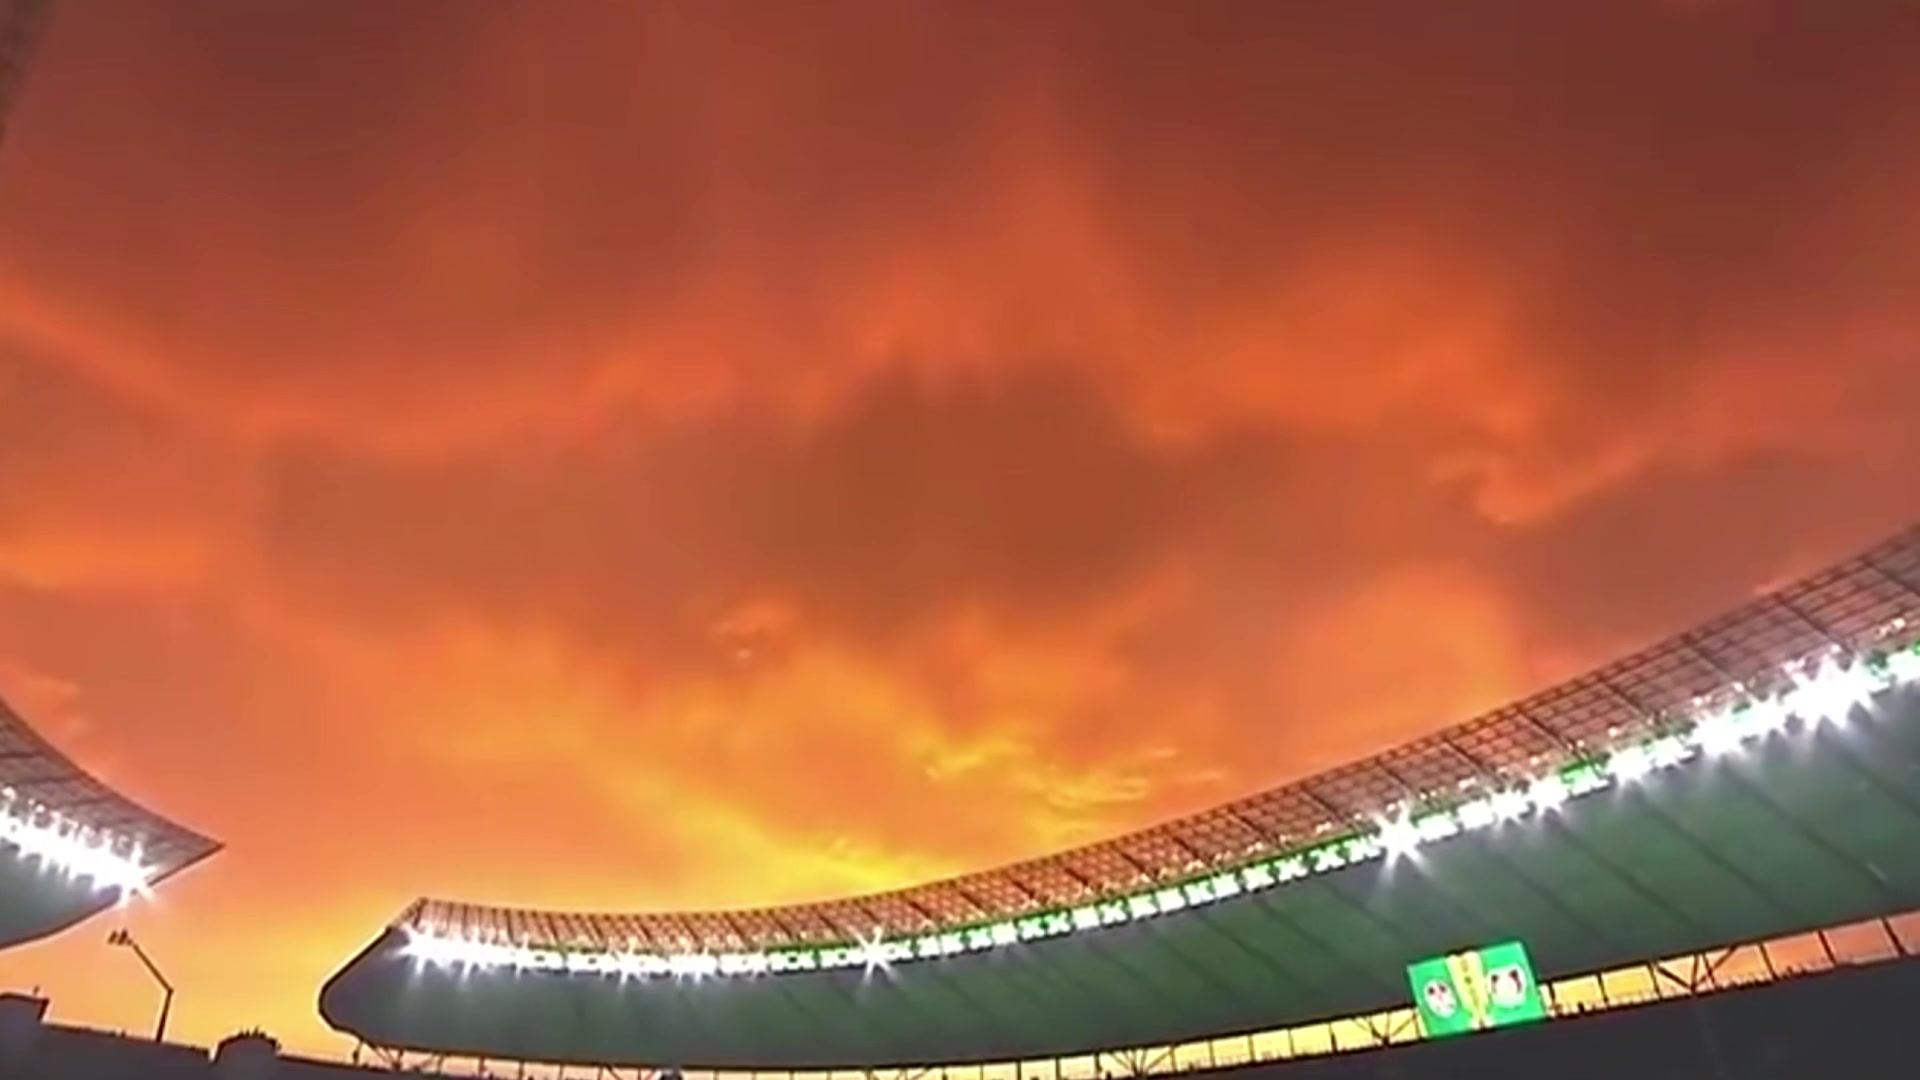  太漂亮了吧！德国杯决赛现场的美丽日落